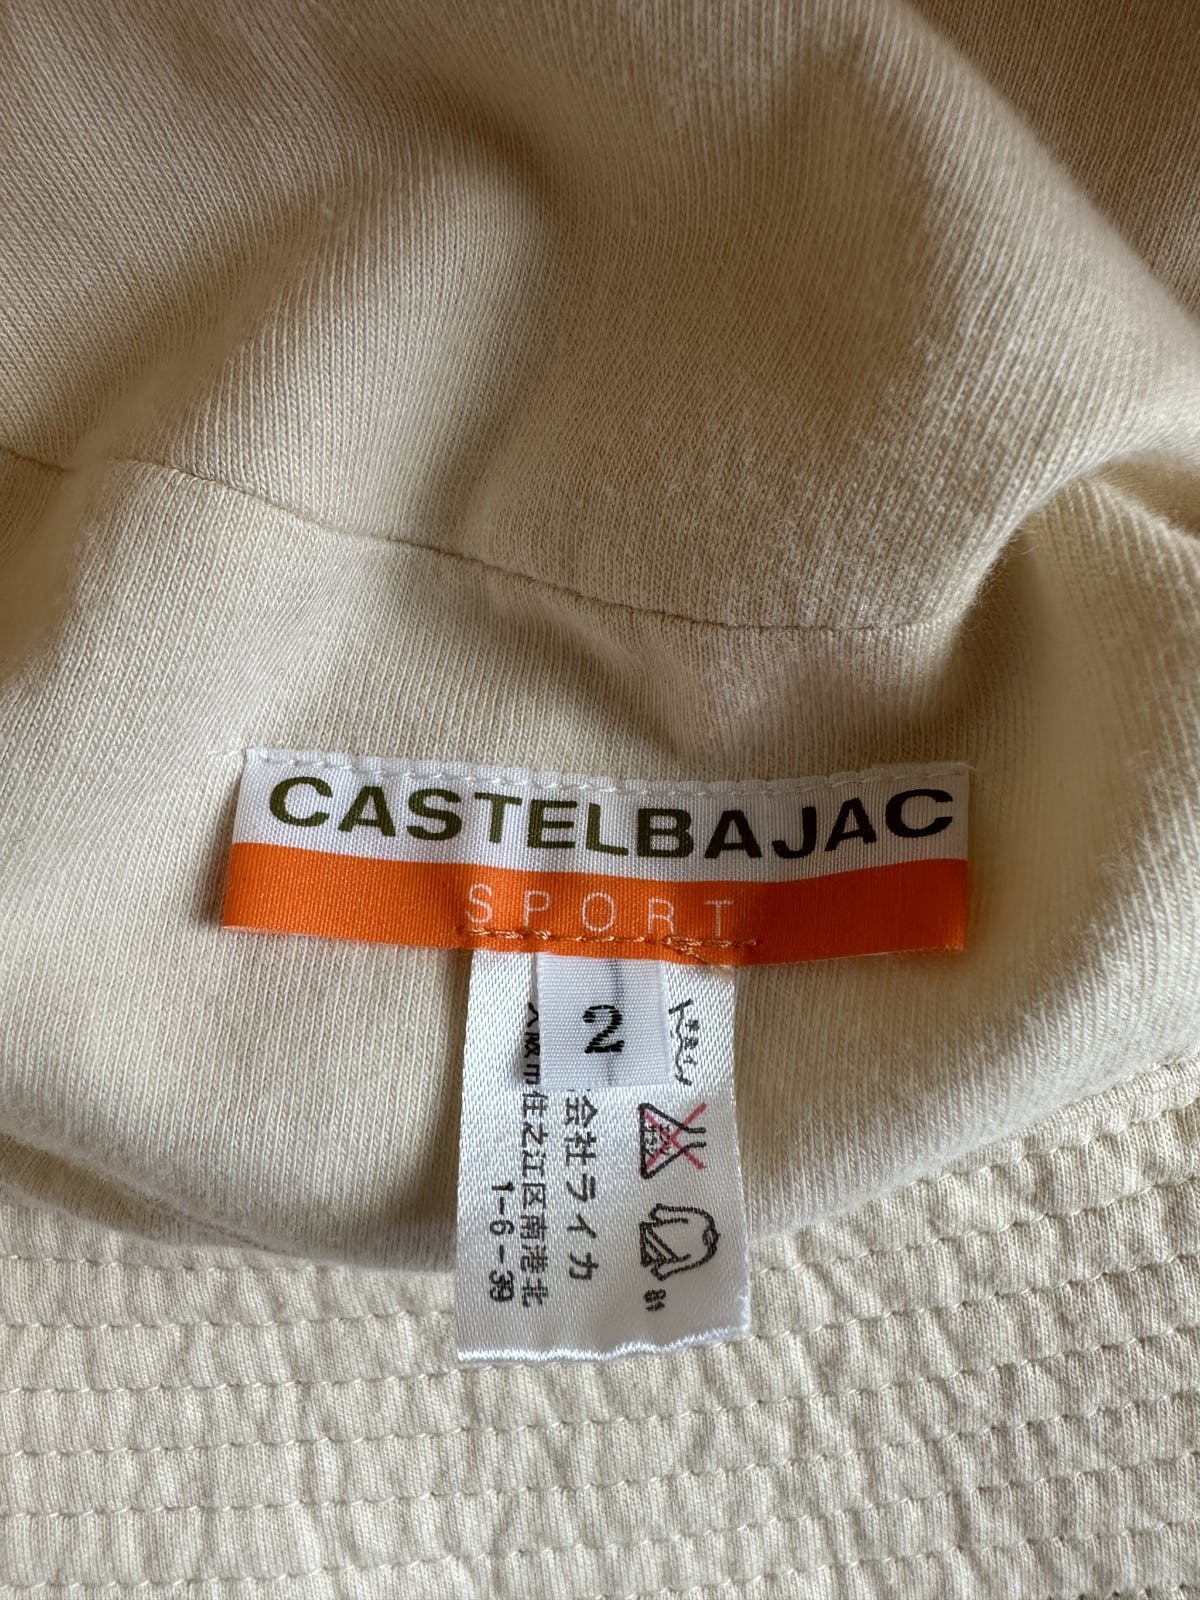 Jean Charles De Castelbajac - CASTEL BAJAC SPORT BUCKET HAT - 9